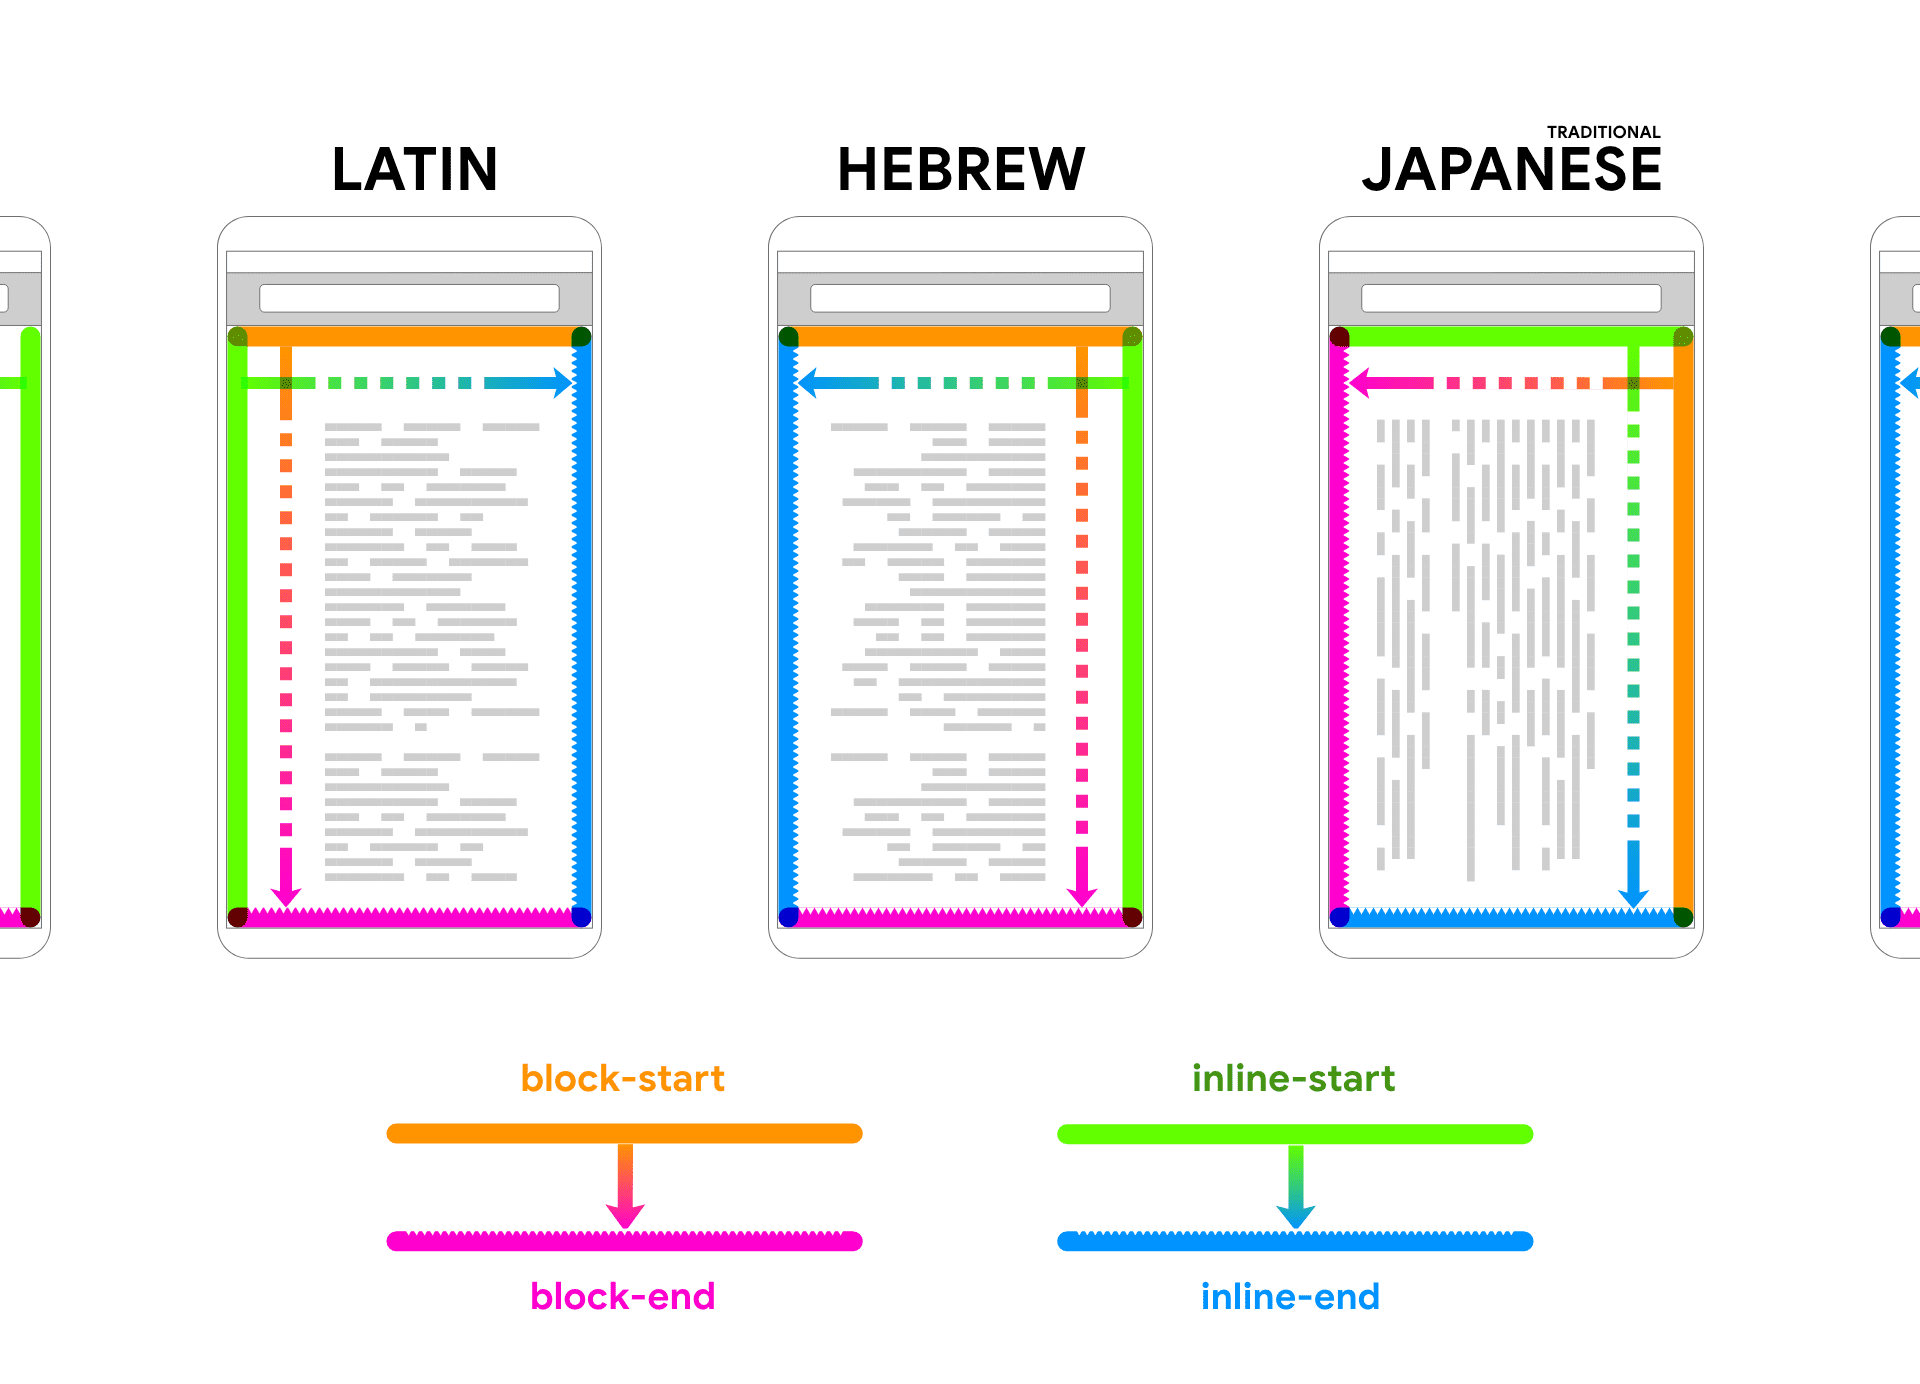 लैटिन, हिब्रू, और जैपनीज़ भाषा में, डिवाइस फ़्रेम के अंदर प्लेसहोल्डर टेक्स्ट दिखाया जाता है. ब्लॉक और इनलाइन की दो दिशाओं को जोड़ने में मदद करने के लिए, ऐरो और रंग टेक्स्ट को फ़ॉलो करते हैं.